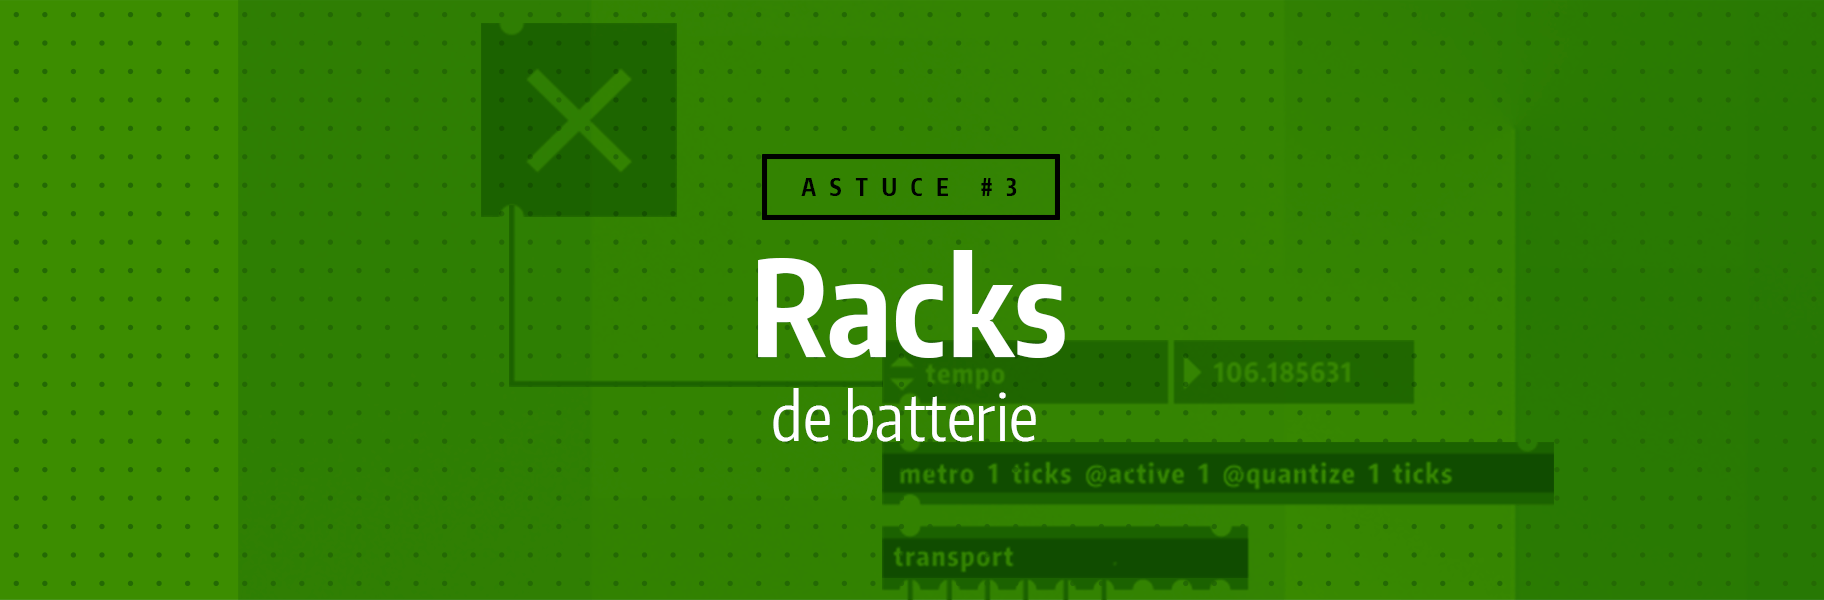 Astuce rapide #3 - Racks de batterie